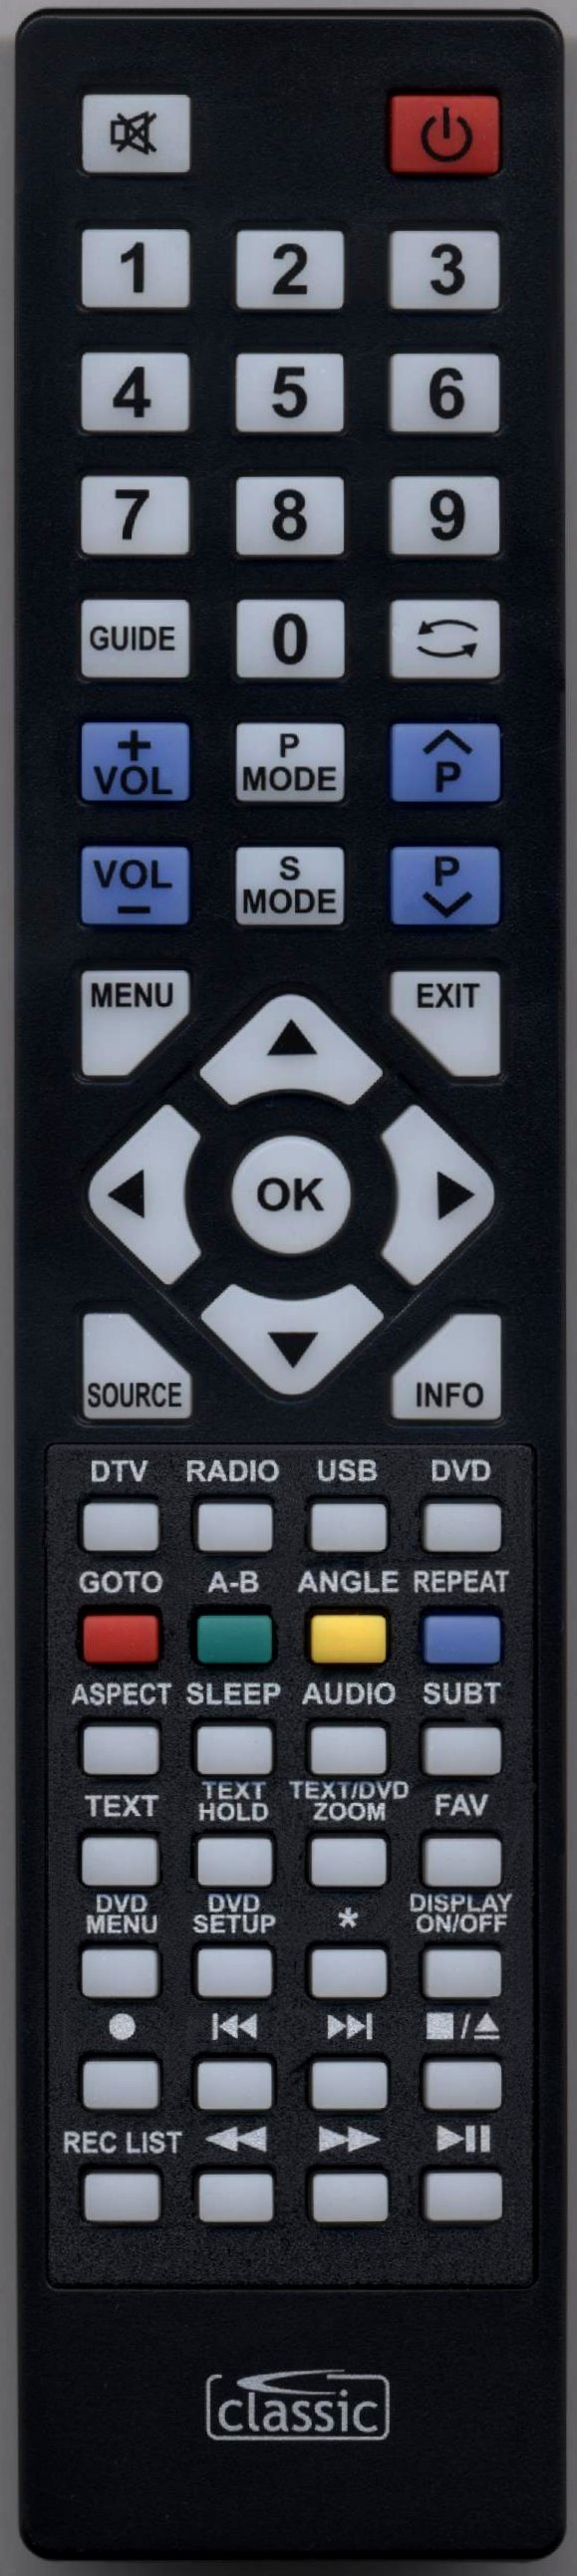 TECHNIKA 32E21B-FHD/DVD Remote Control Alternative